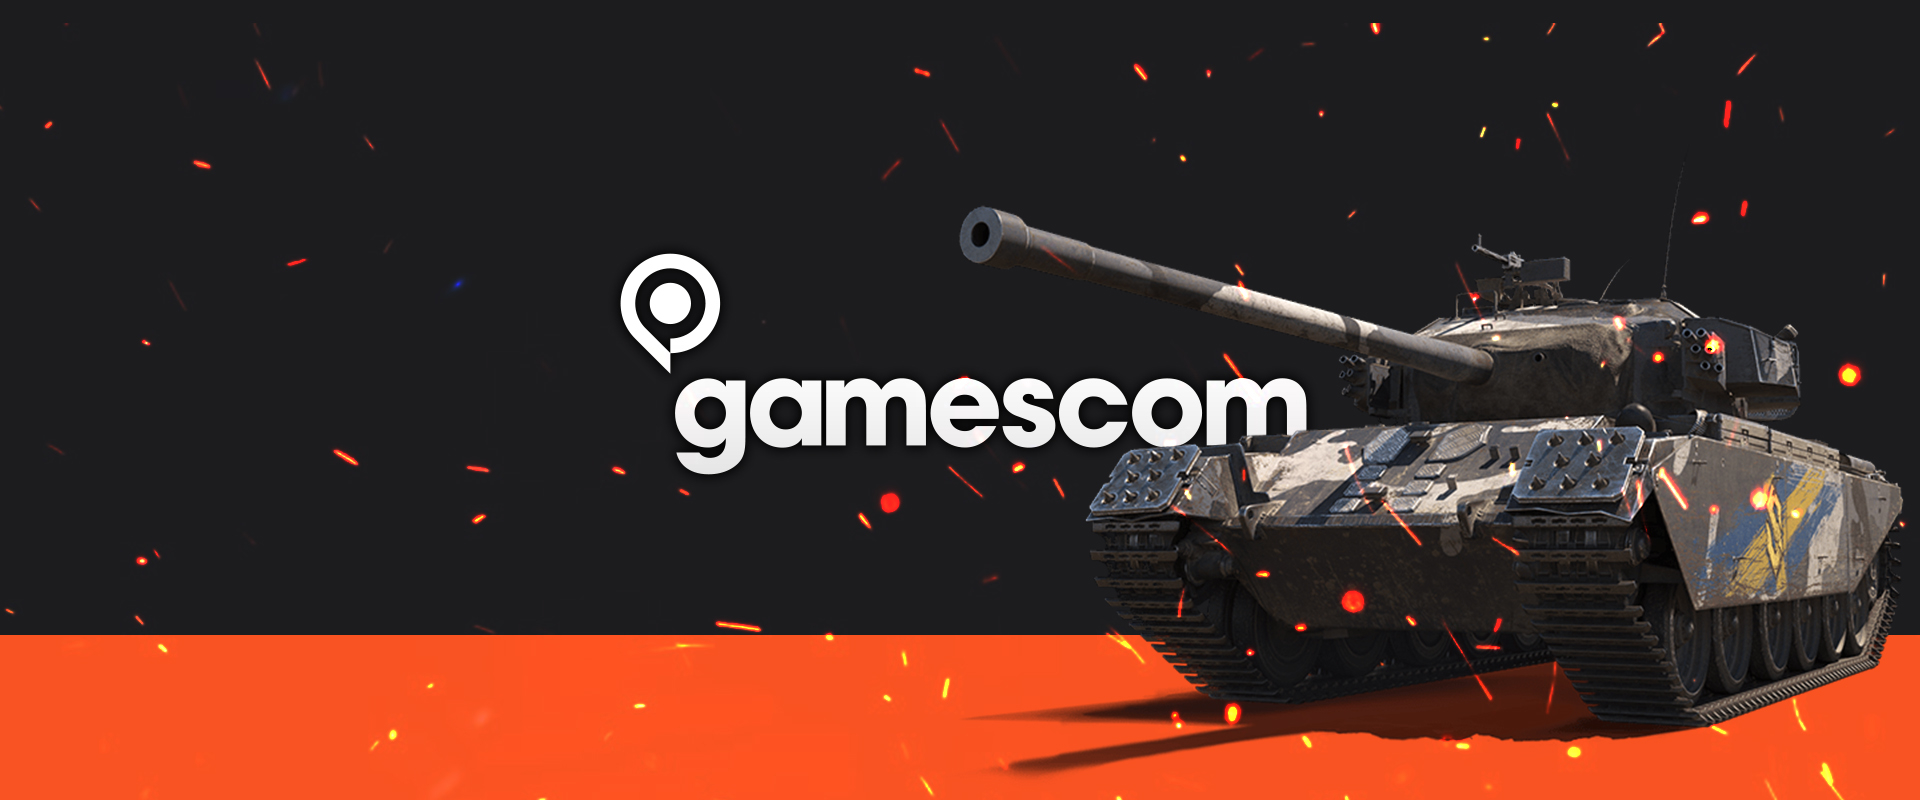 Heti küldetés: A Gamescom csatája